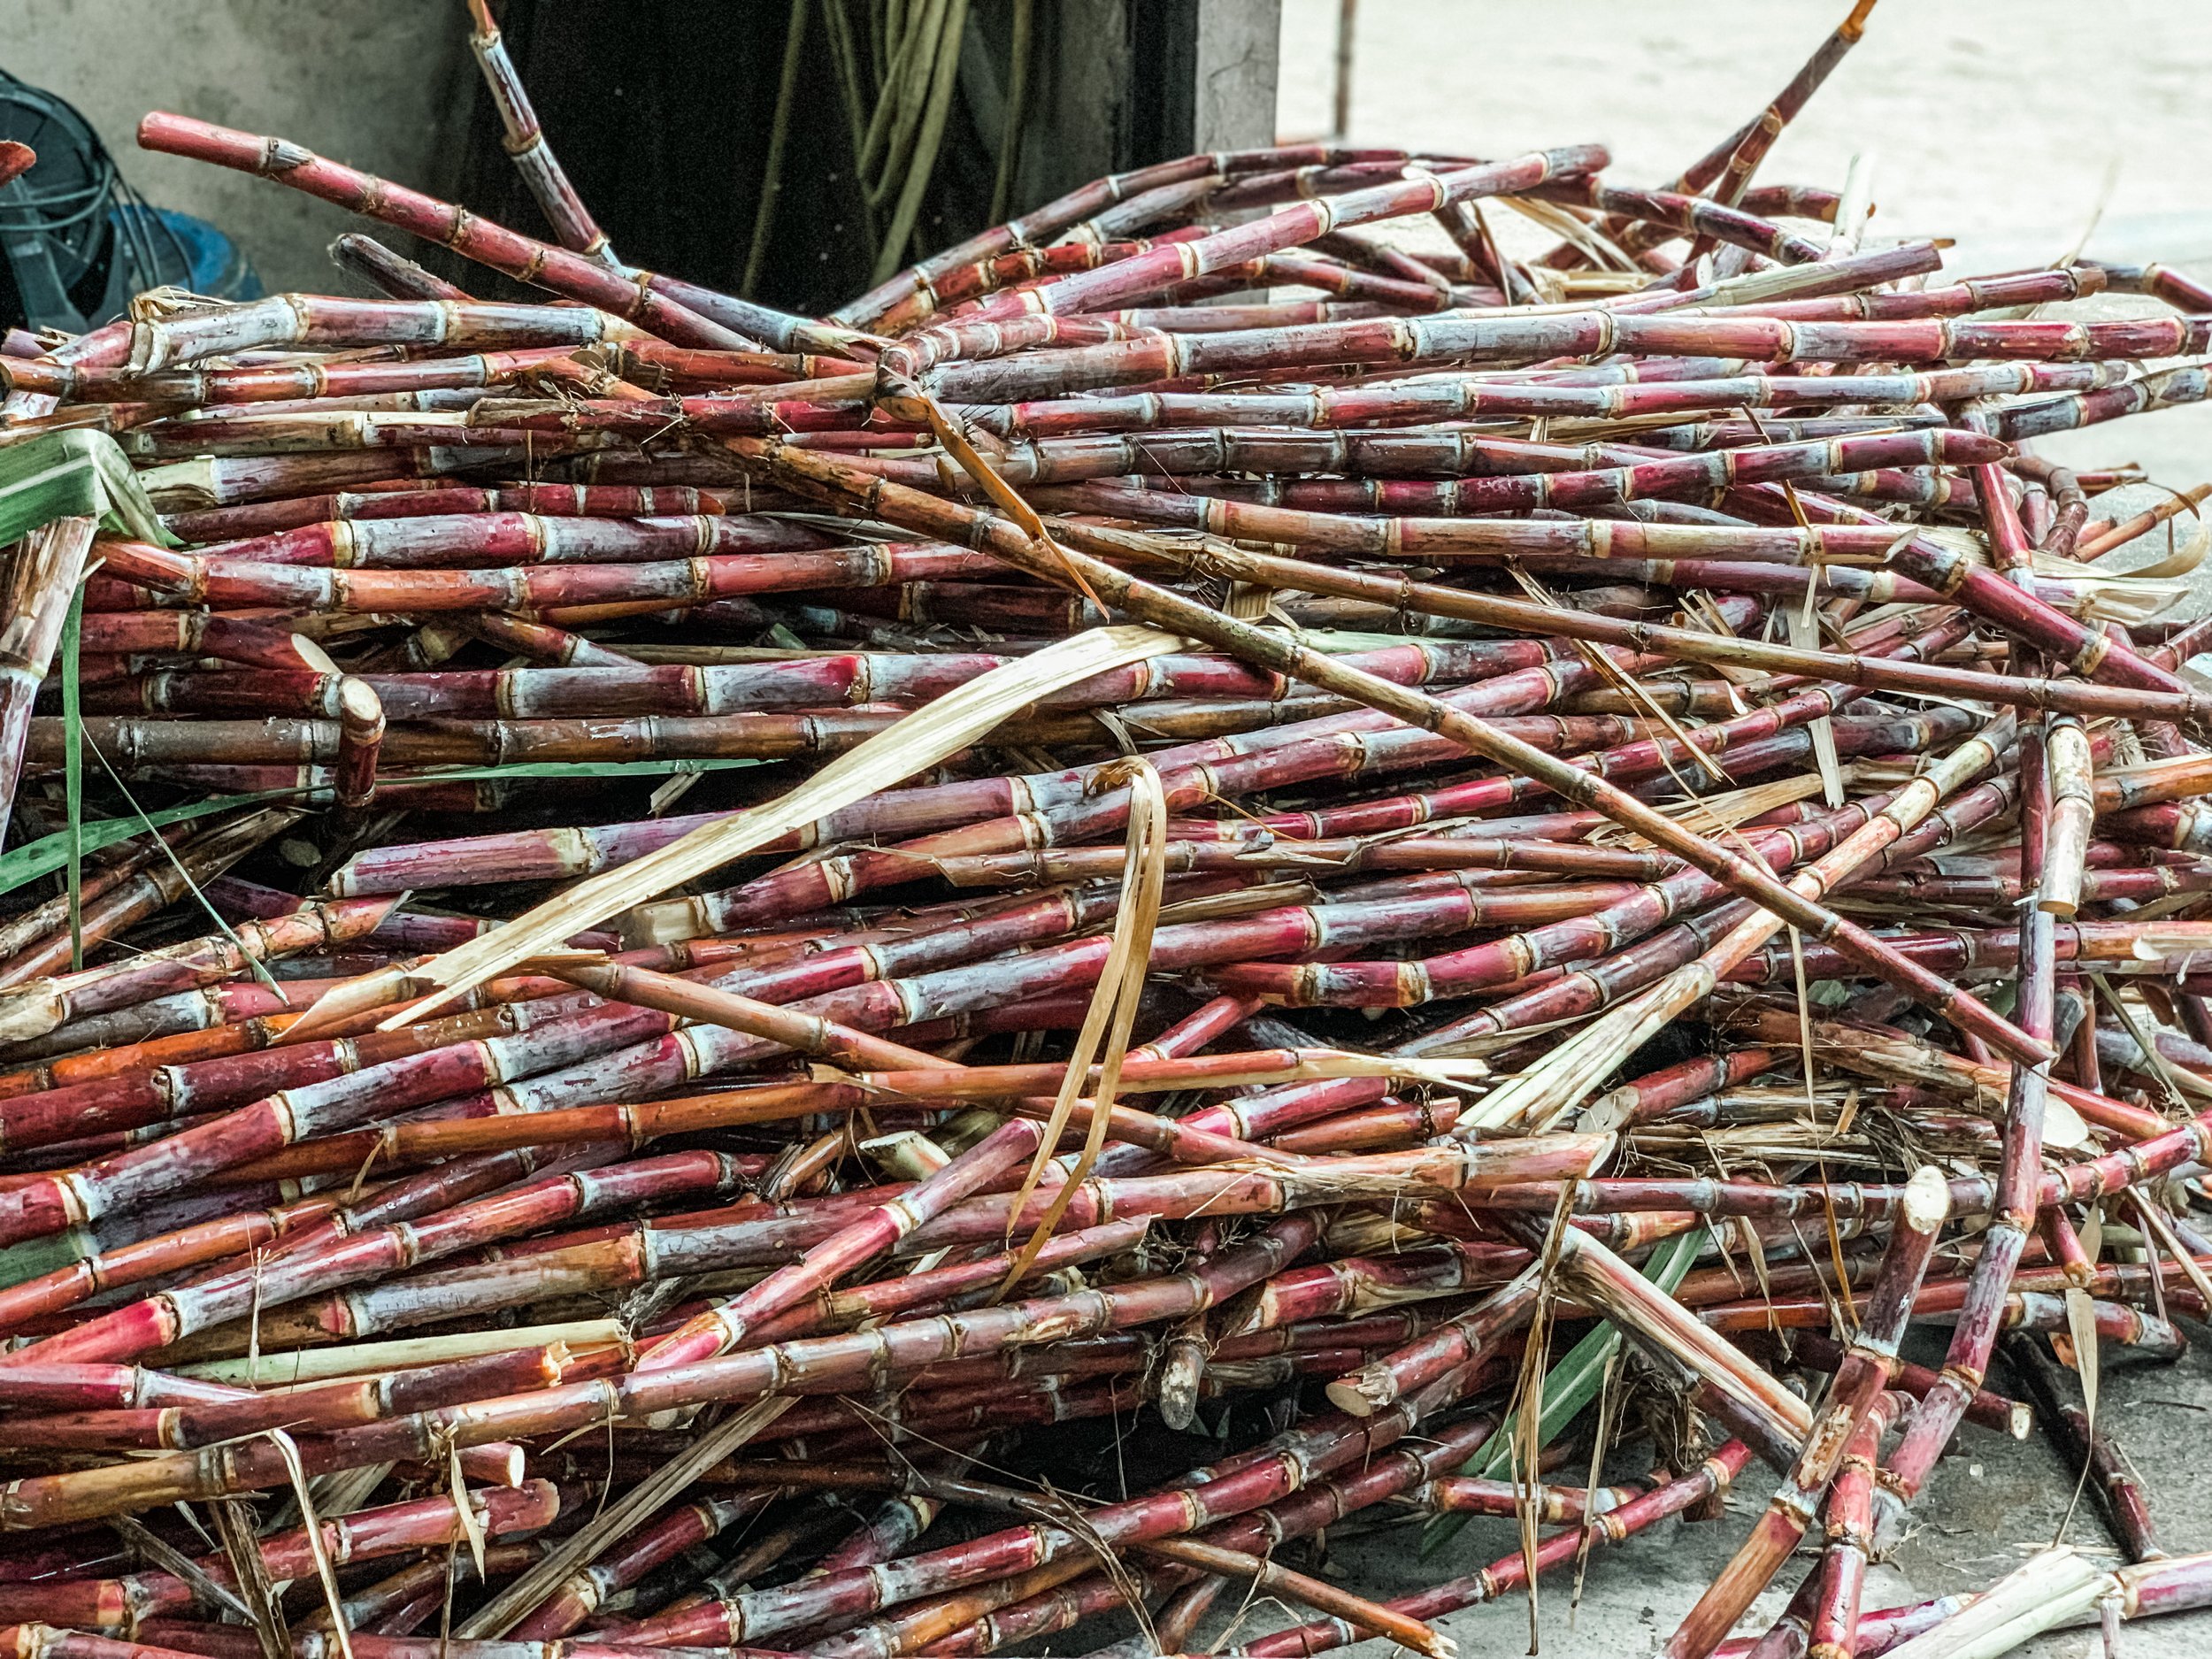 Sugar cane at Distillerie de Taha’a where they serve Domaine Pari Pari